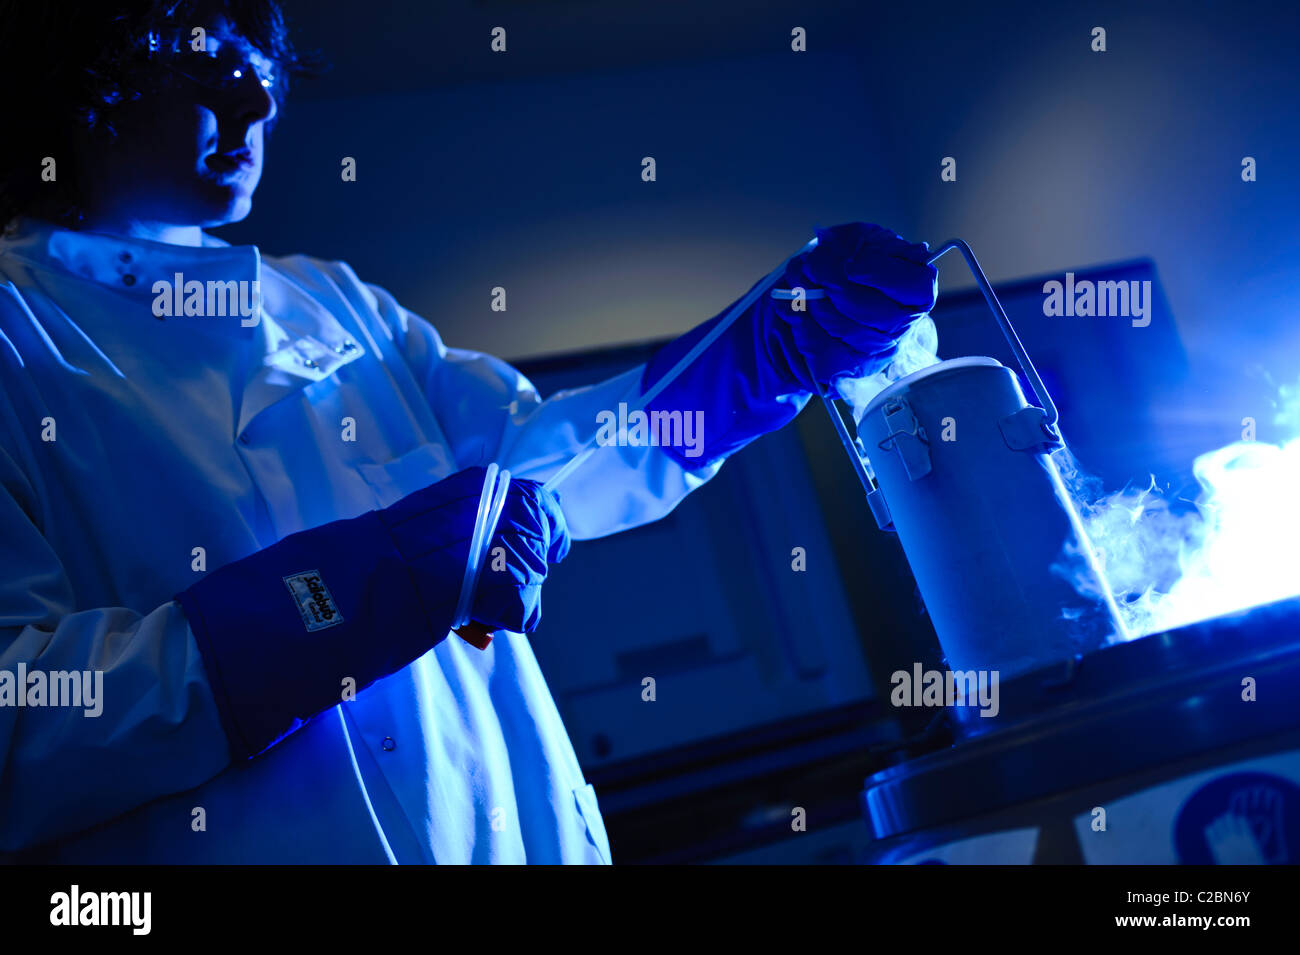 Scientifique de jeunes hommes portant ces lunettes et gants blouse bleu de cultures cellulaires à partir de l'azote liquide bleu allumé de manière dynamique Banque D'Images